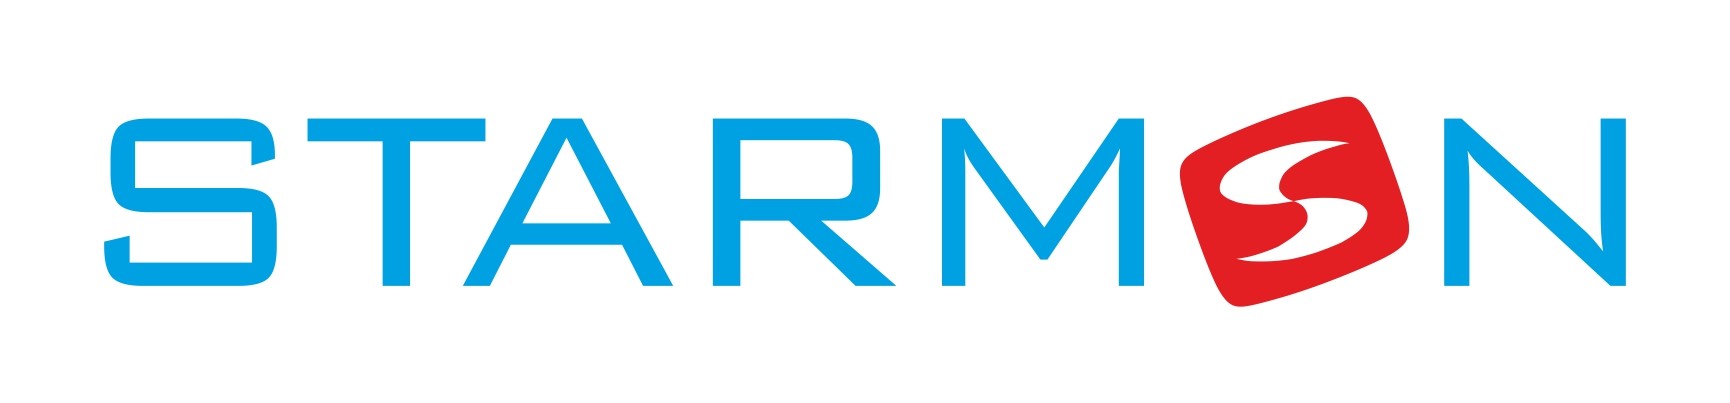 Starmon_logo